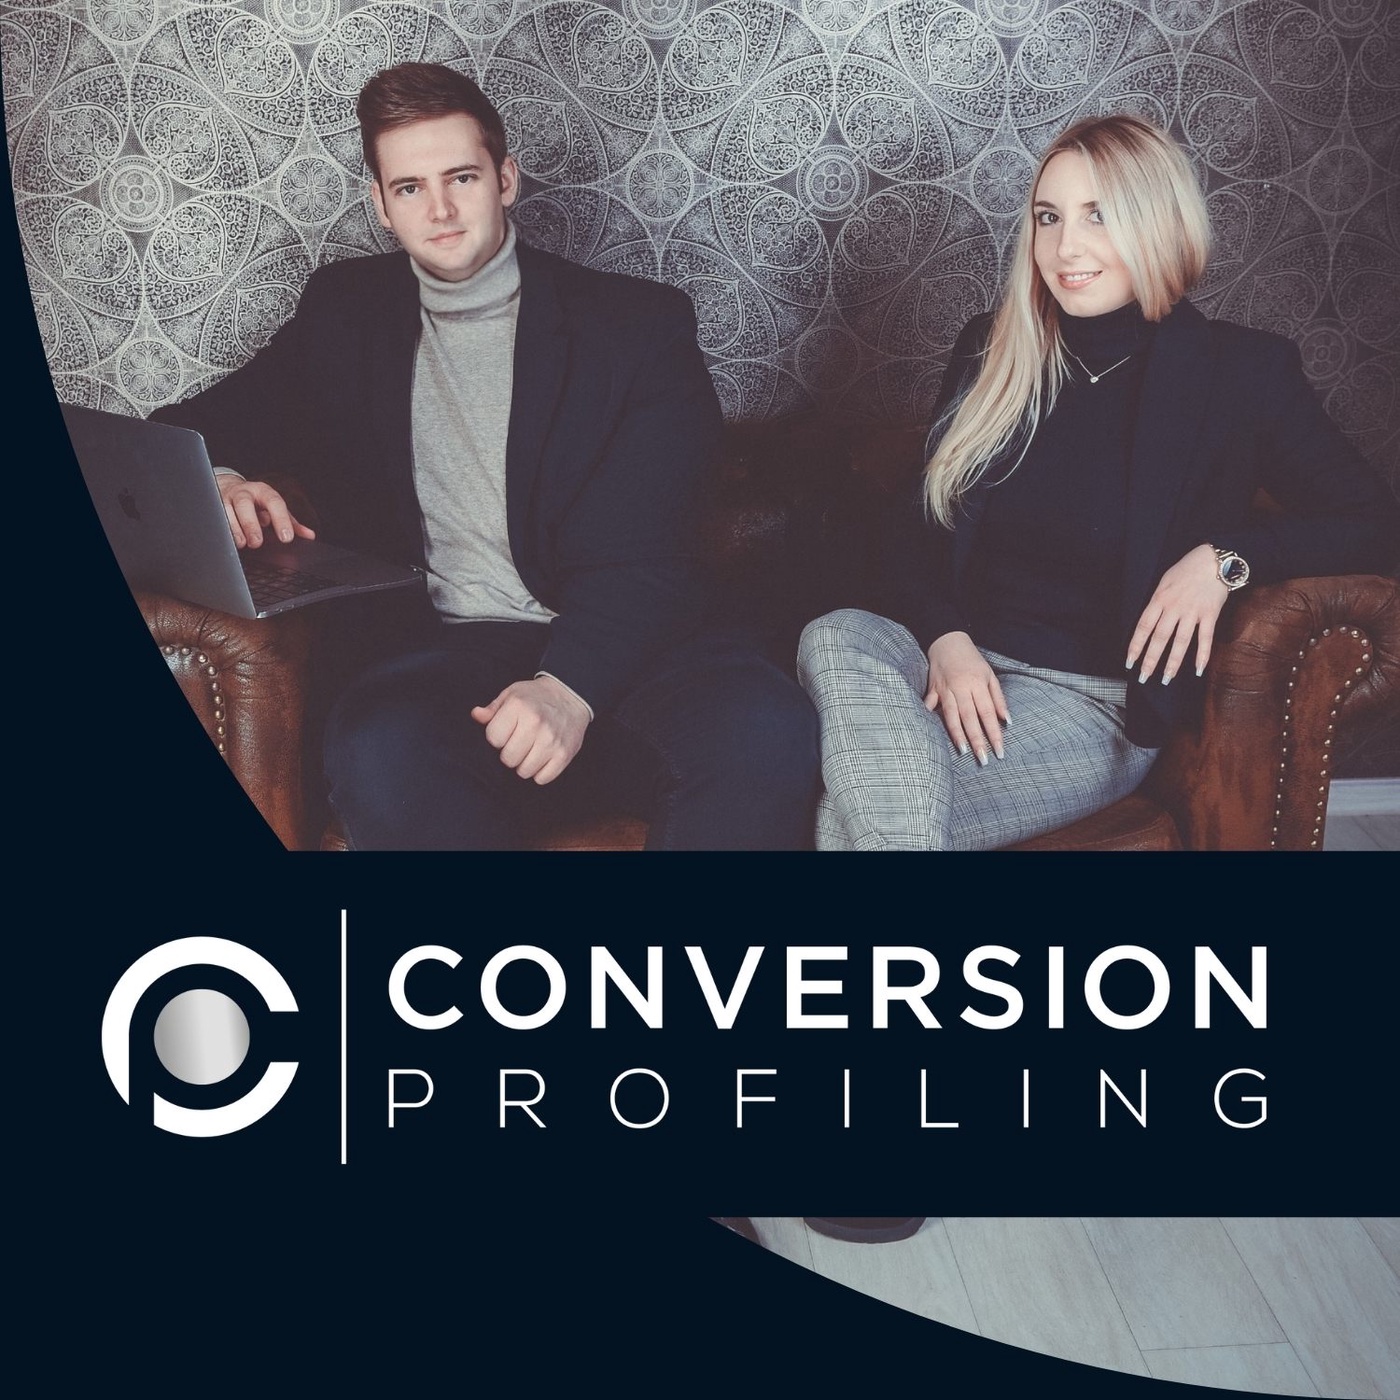 Conversion Profiling: Durch Marketing & Persönlichkeitsentwicklung zum profitablen Online-Business